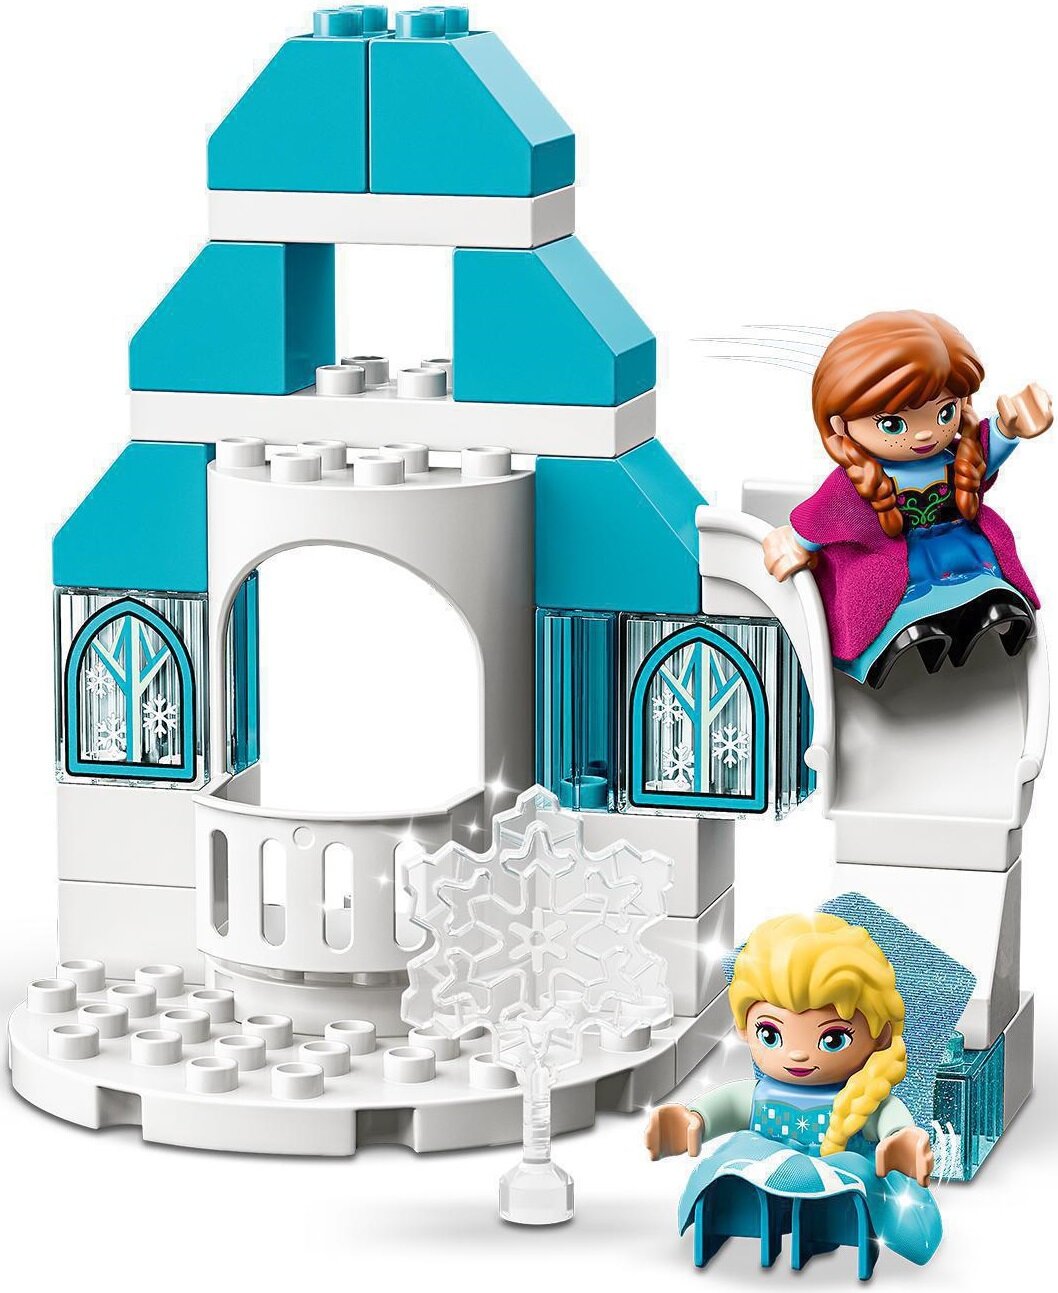 LEGO DUPLO Zamek z krainy lodu 10899 - niskie ceny i opinie w Media Expert